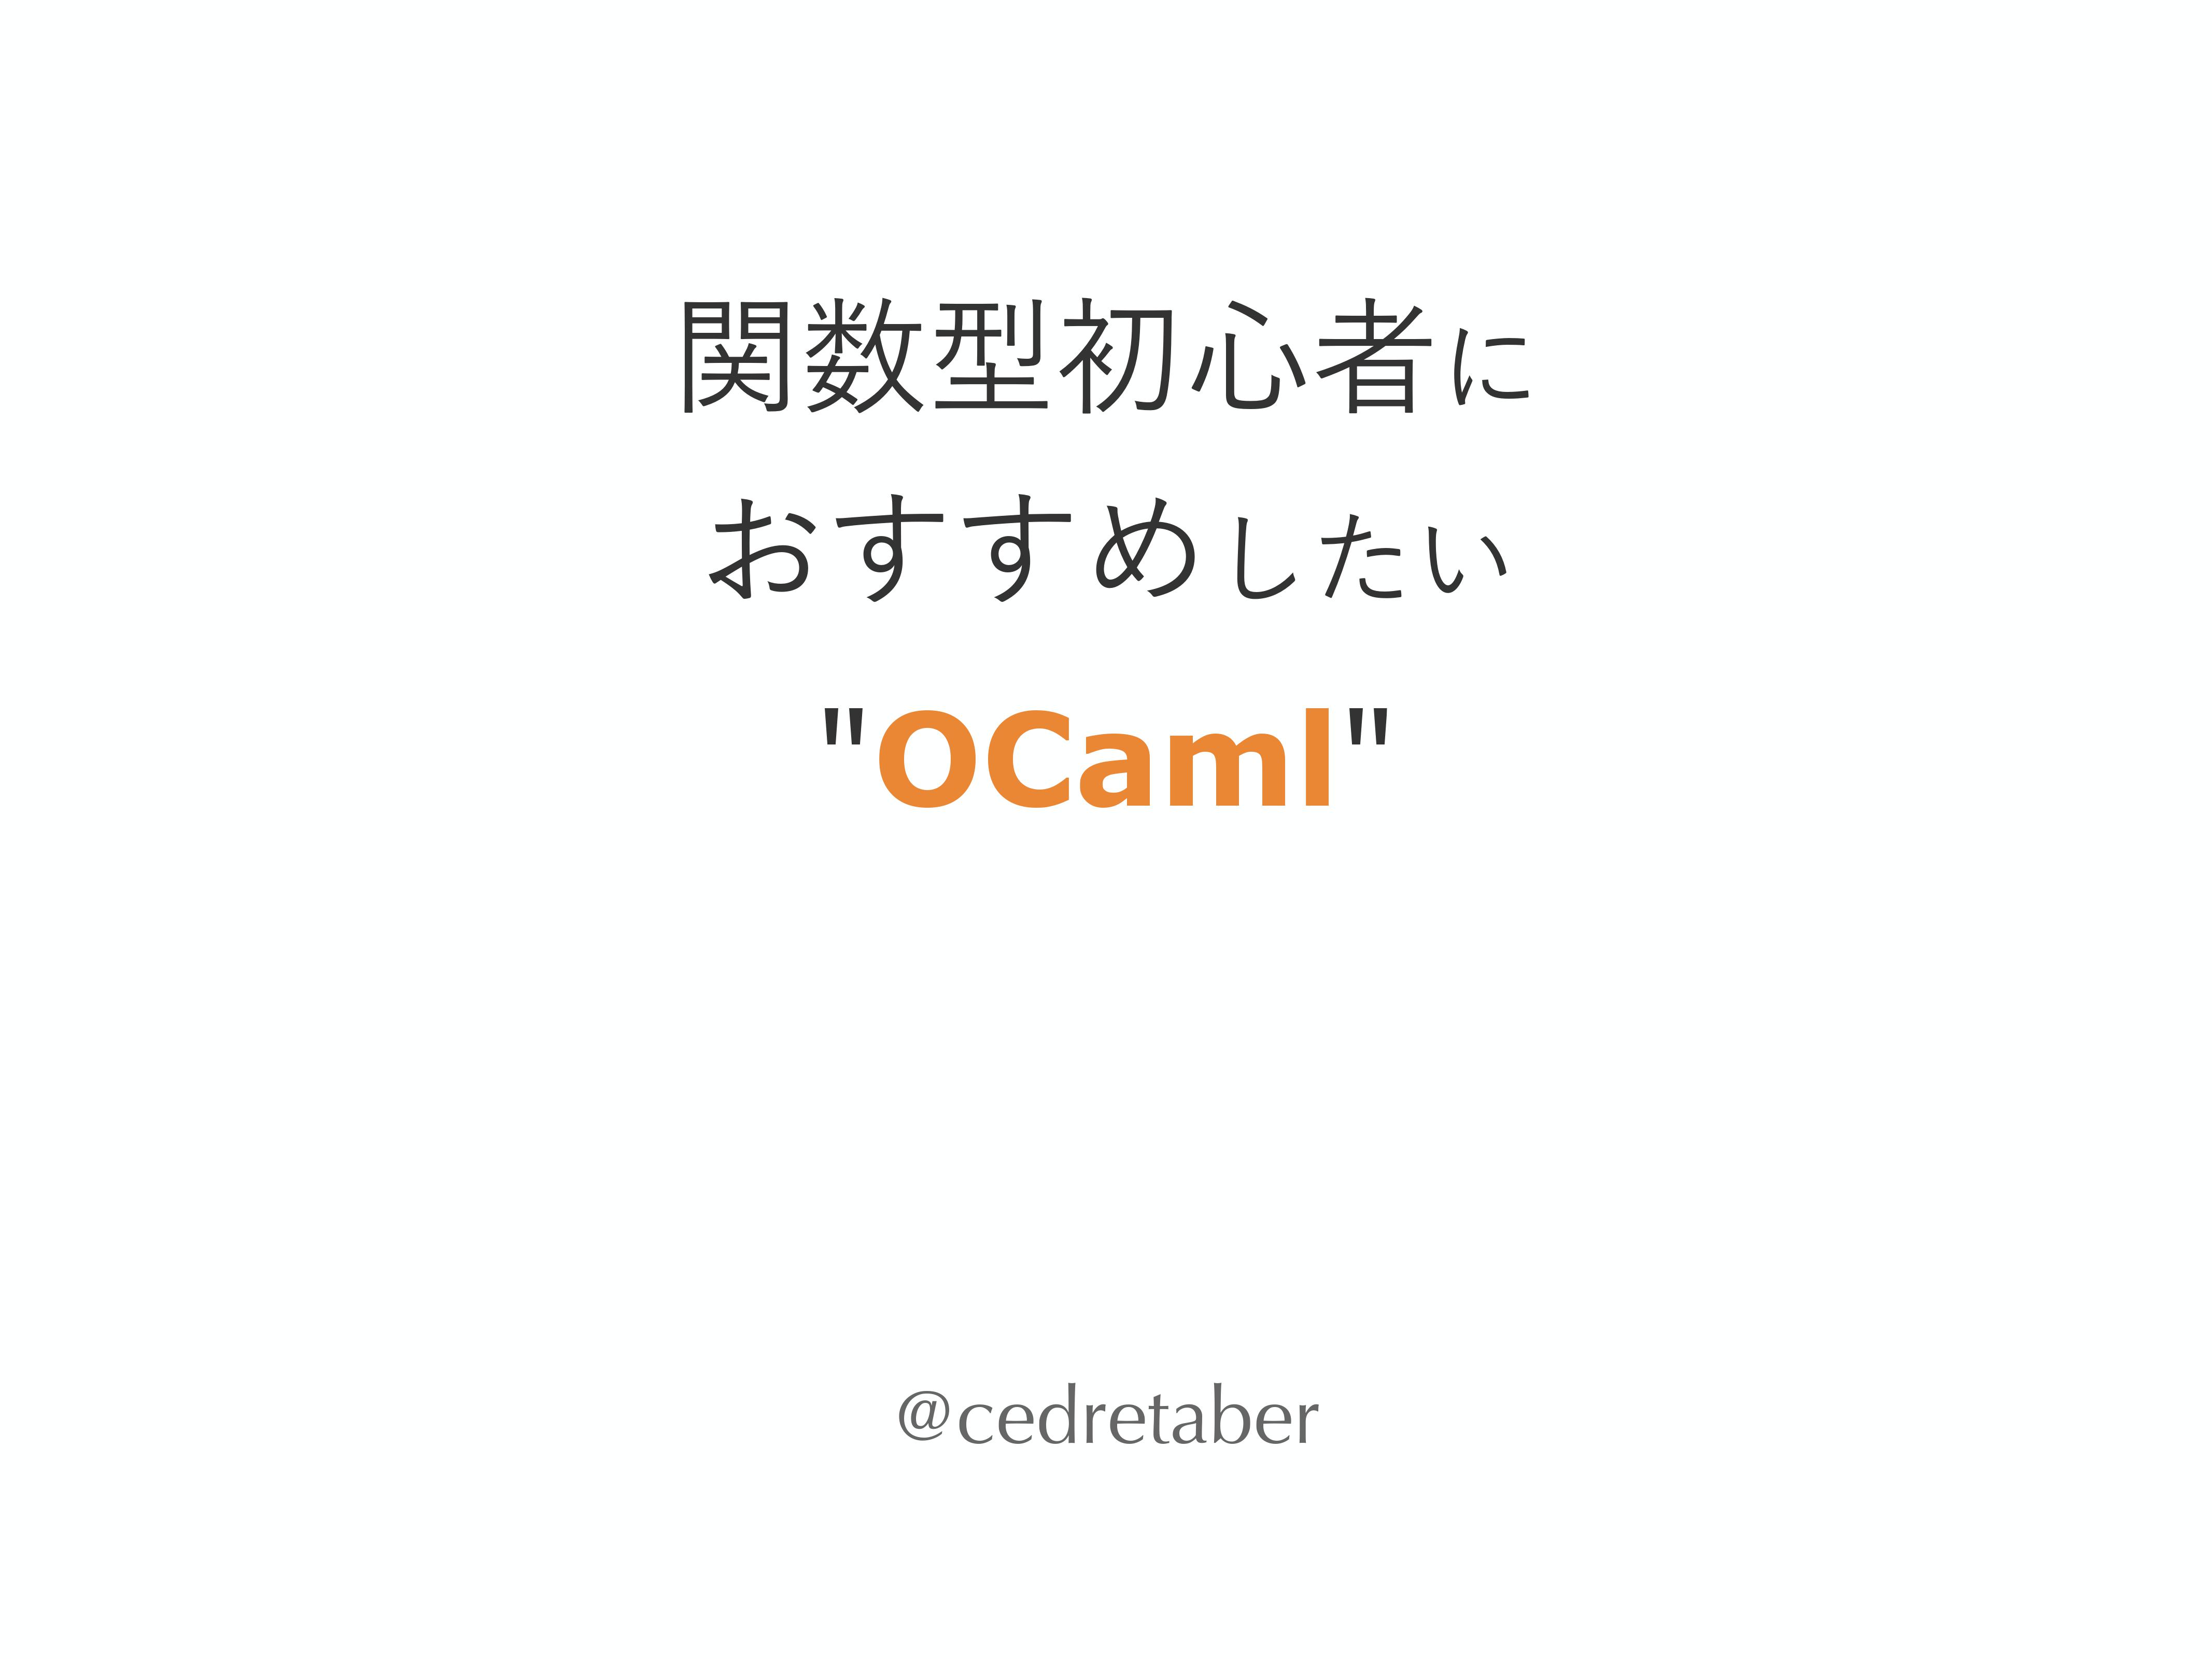 関数型言語初心者にこそおすすめしたい"OCaml"の特徴